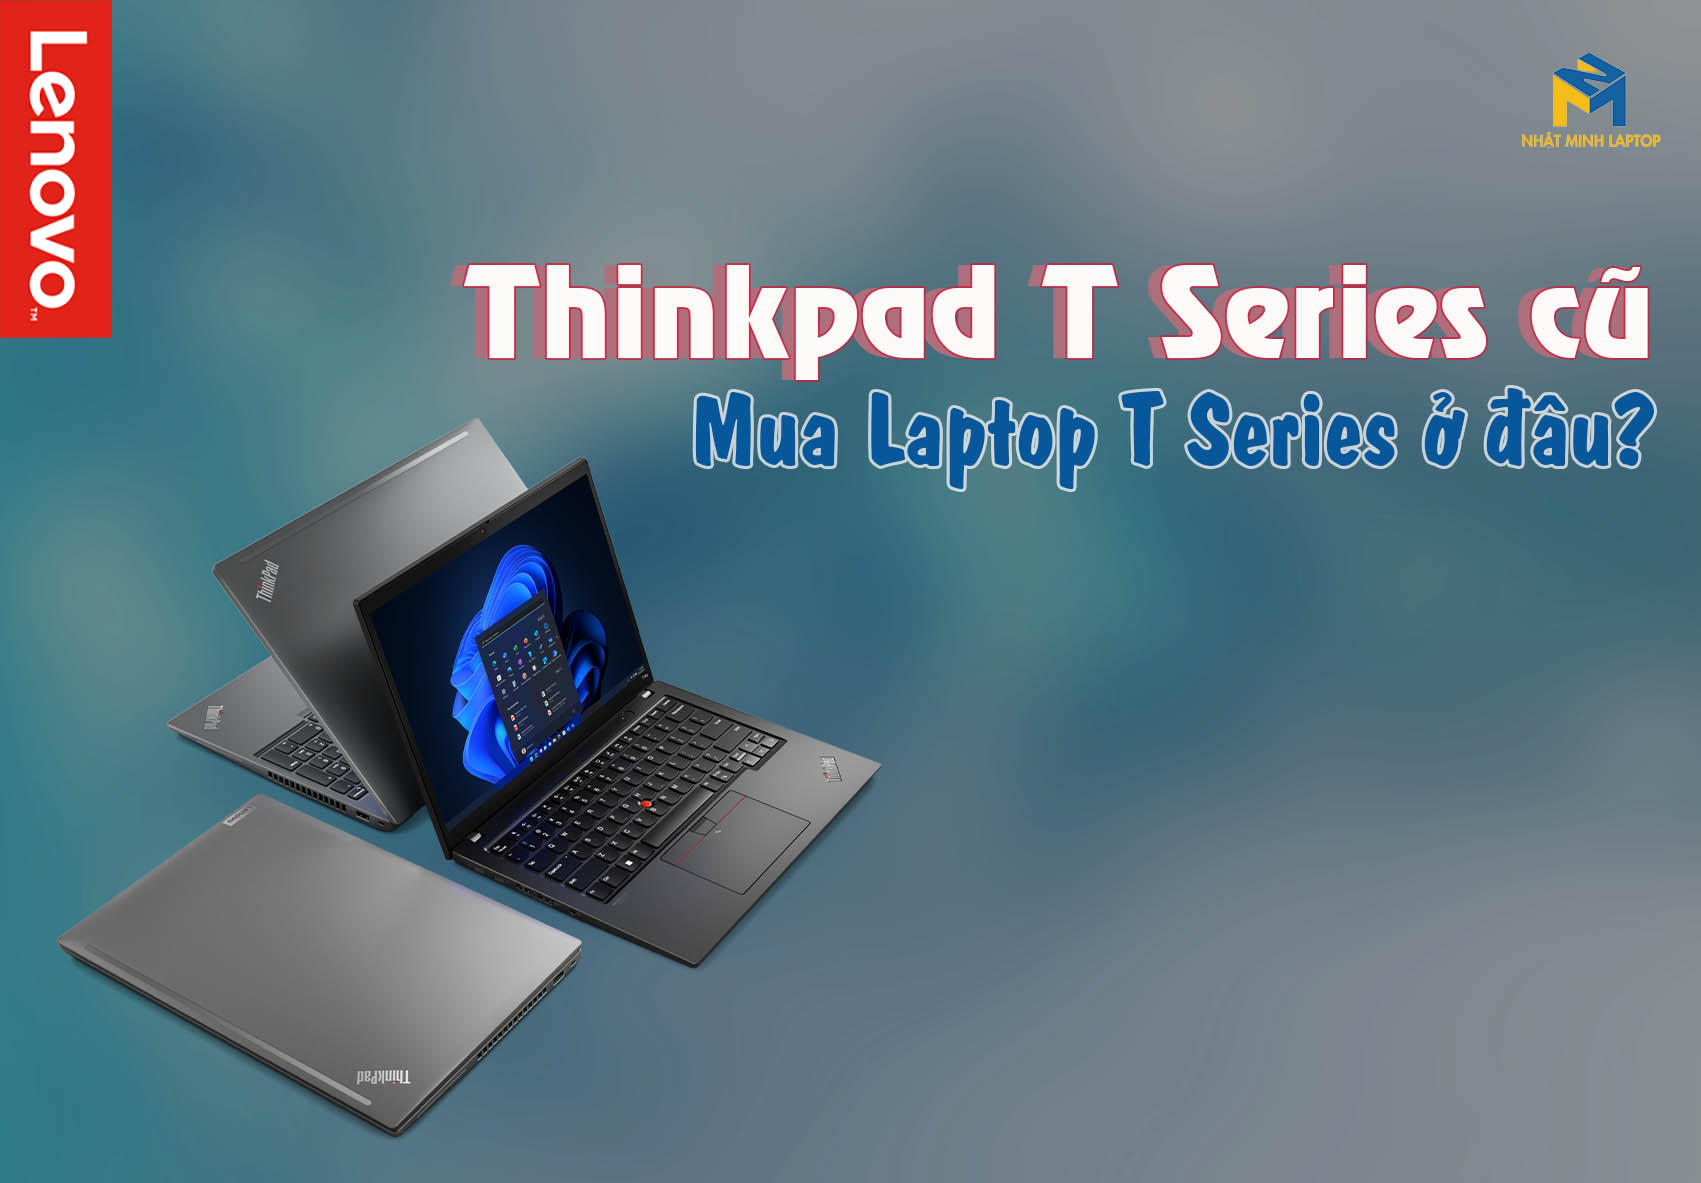 Laptop ThinkPad T Series cũ - Mua Laptop dòng T ở đâu?